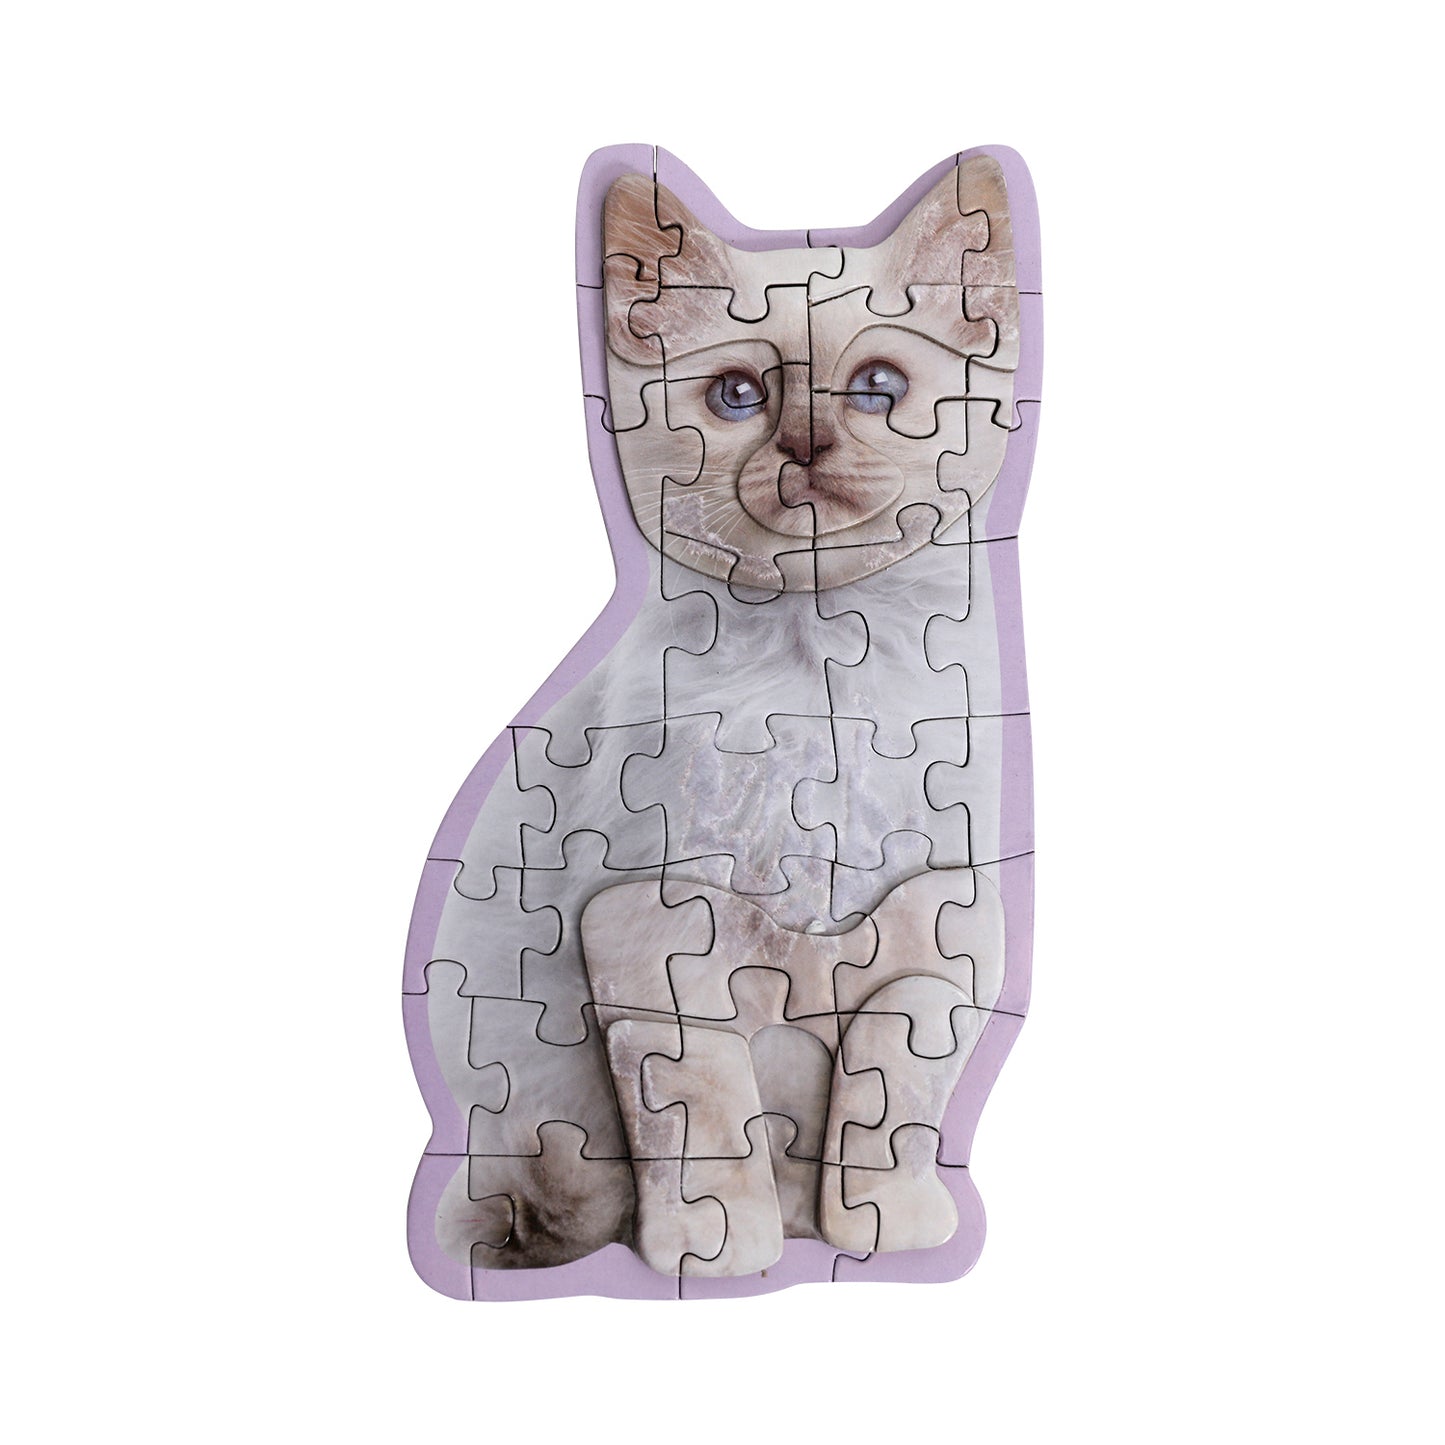 Pet Puzzle 3D